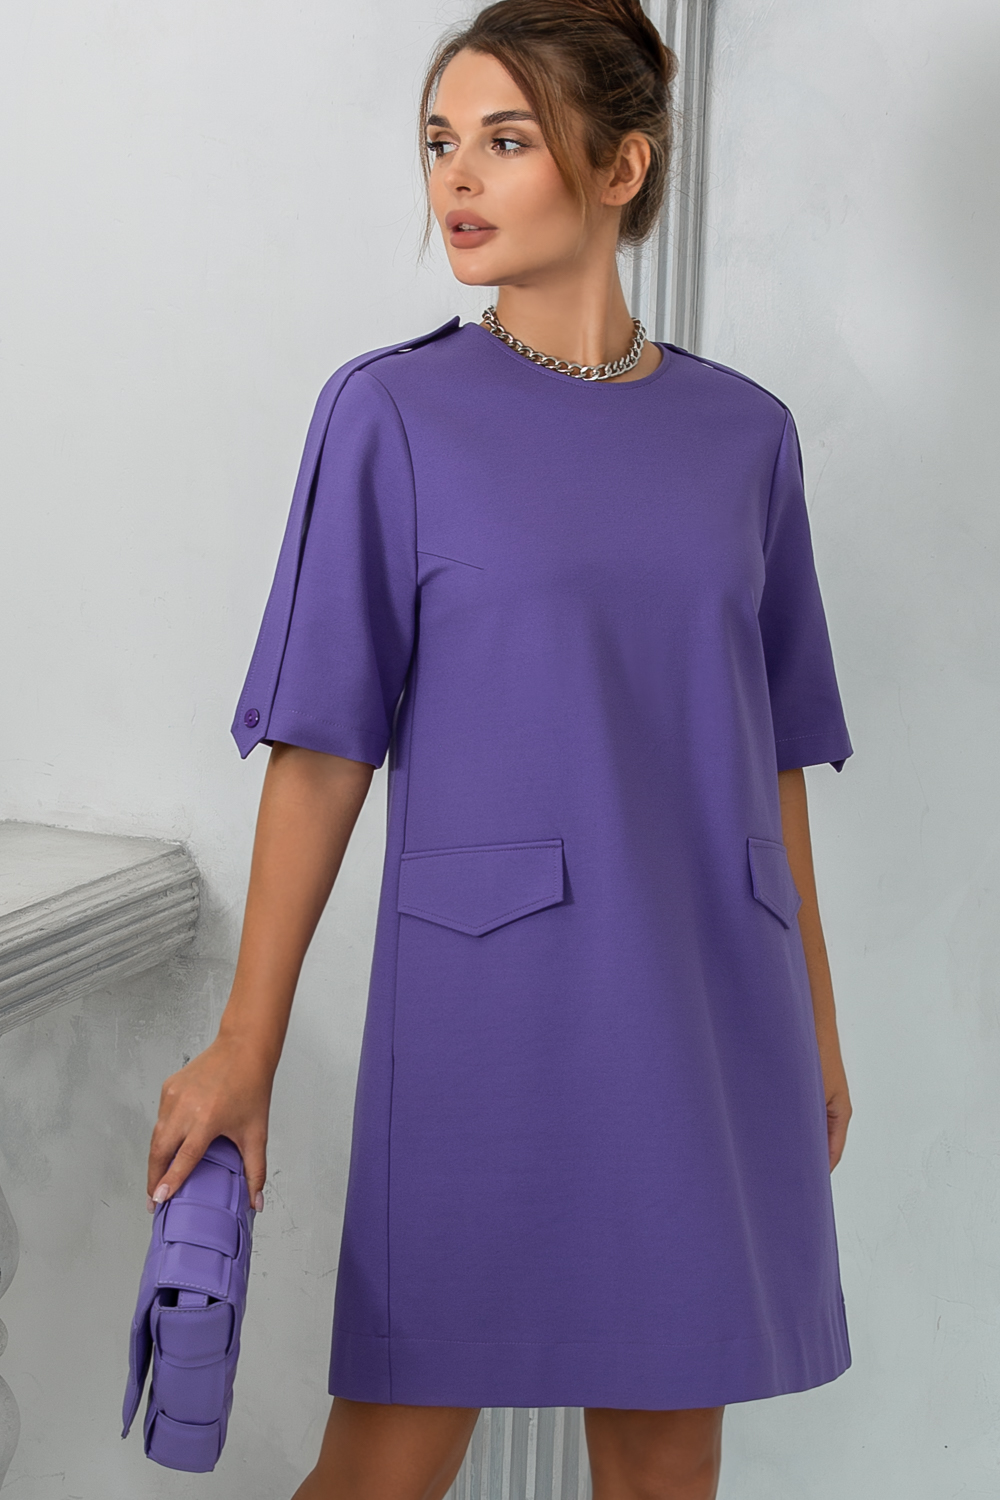 Мариша, платье свободного кроя из плотного трикотажа оттенка lavender от Ритини